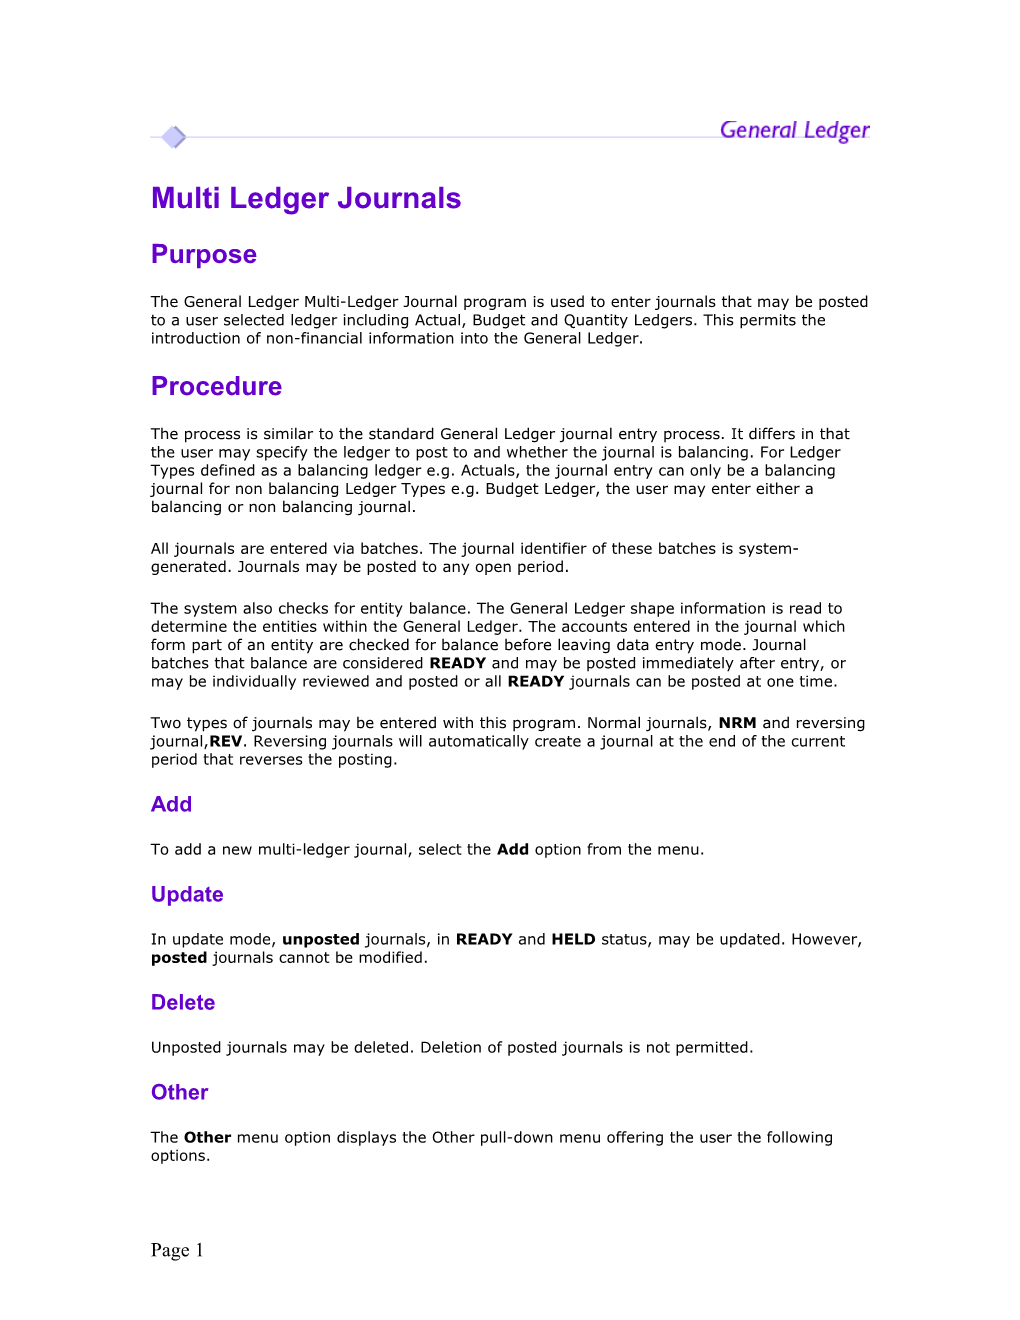 Multi Ledger Journals